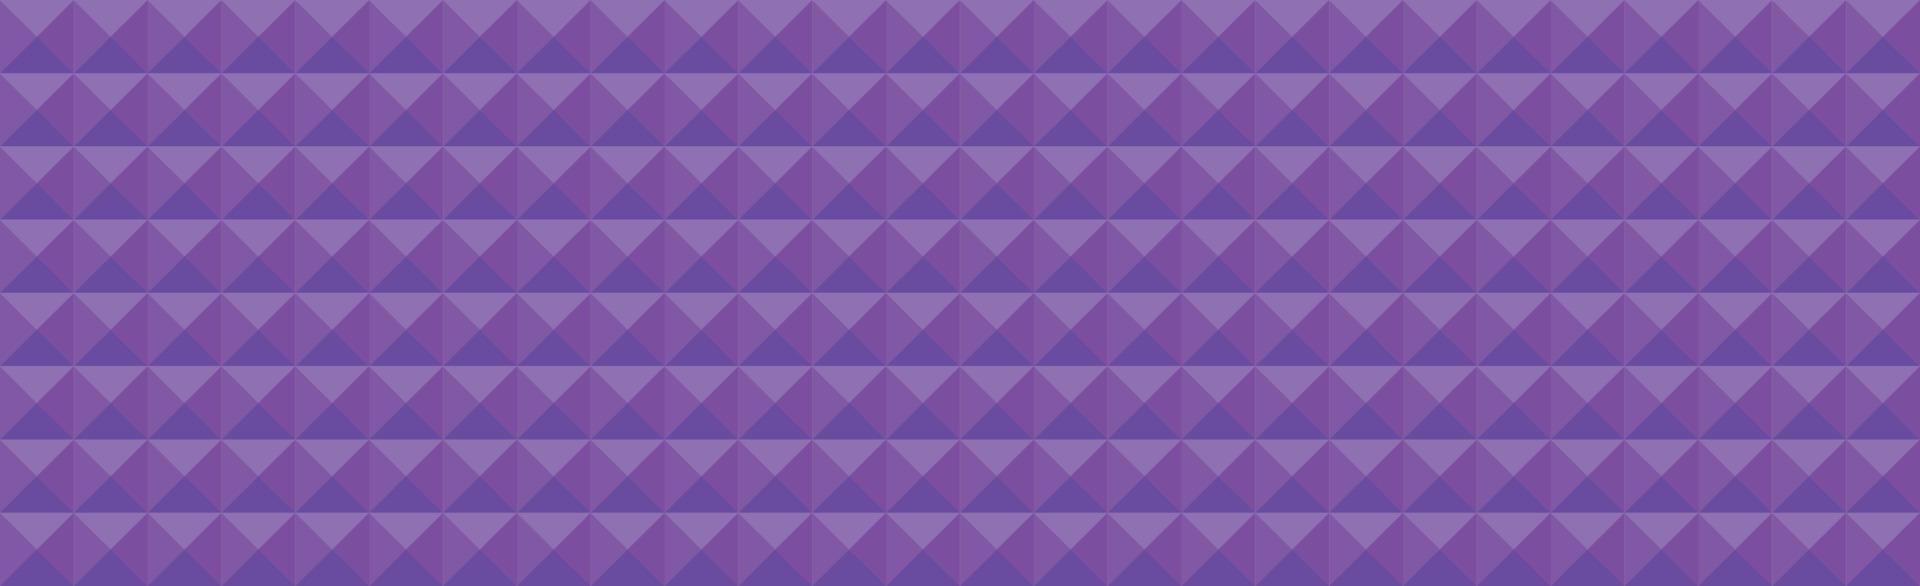 astratto sfondo web panoramico quadrati viola - vettore